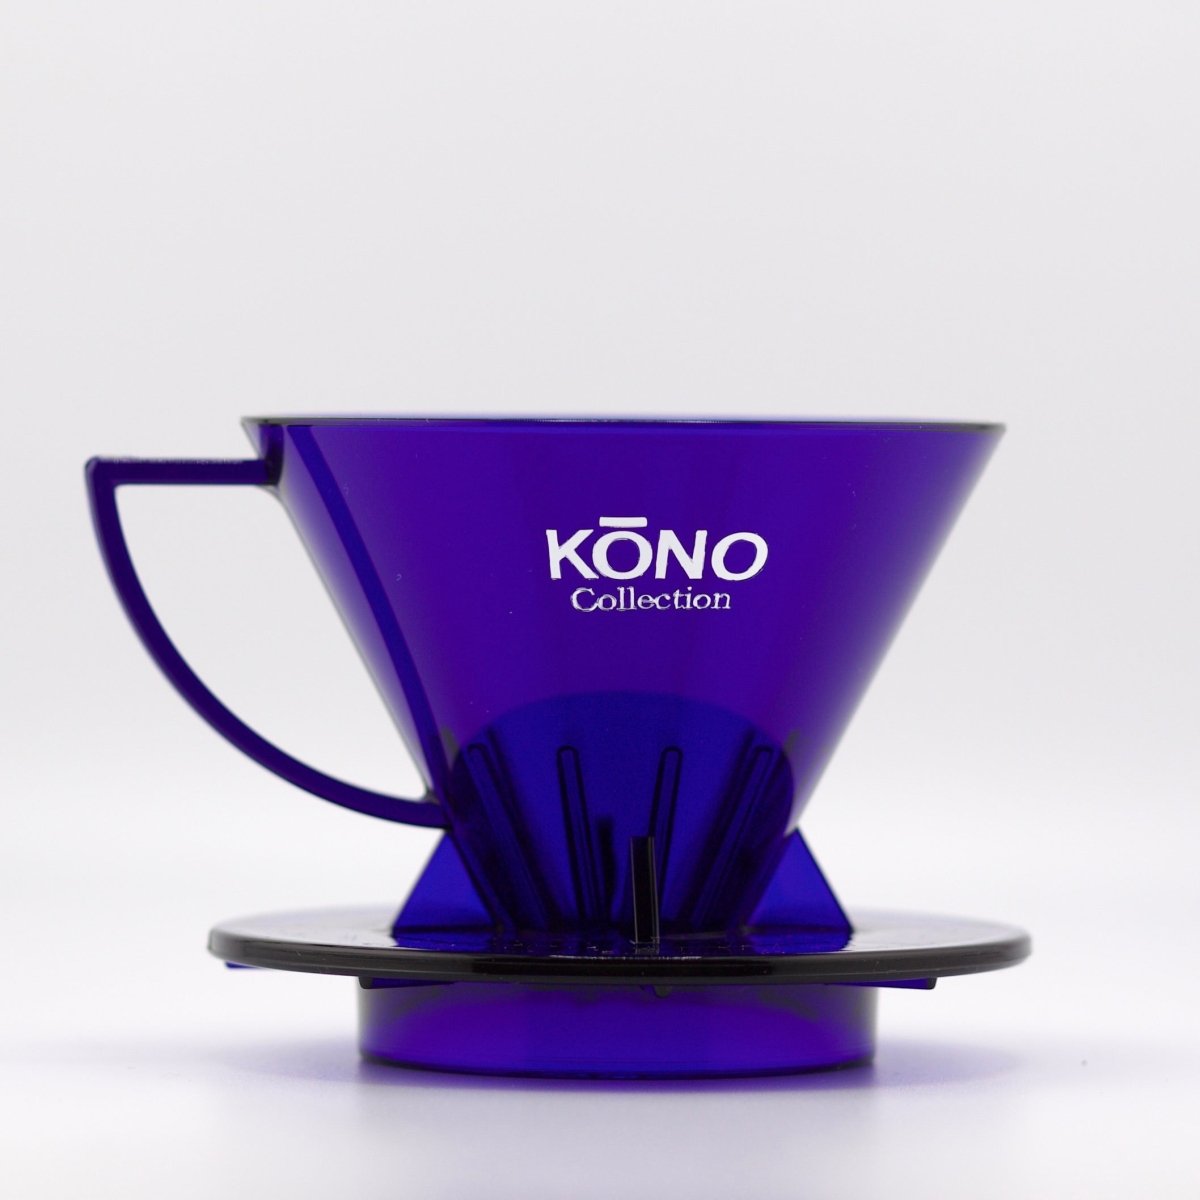 Kono - Filter Coffee Dripper - Clear Blue - Bean Bros.